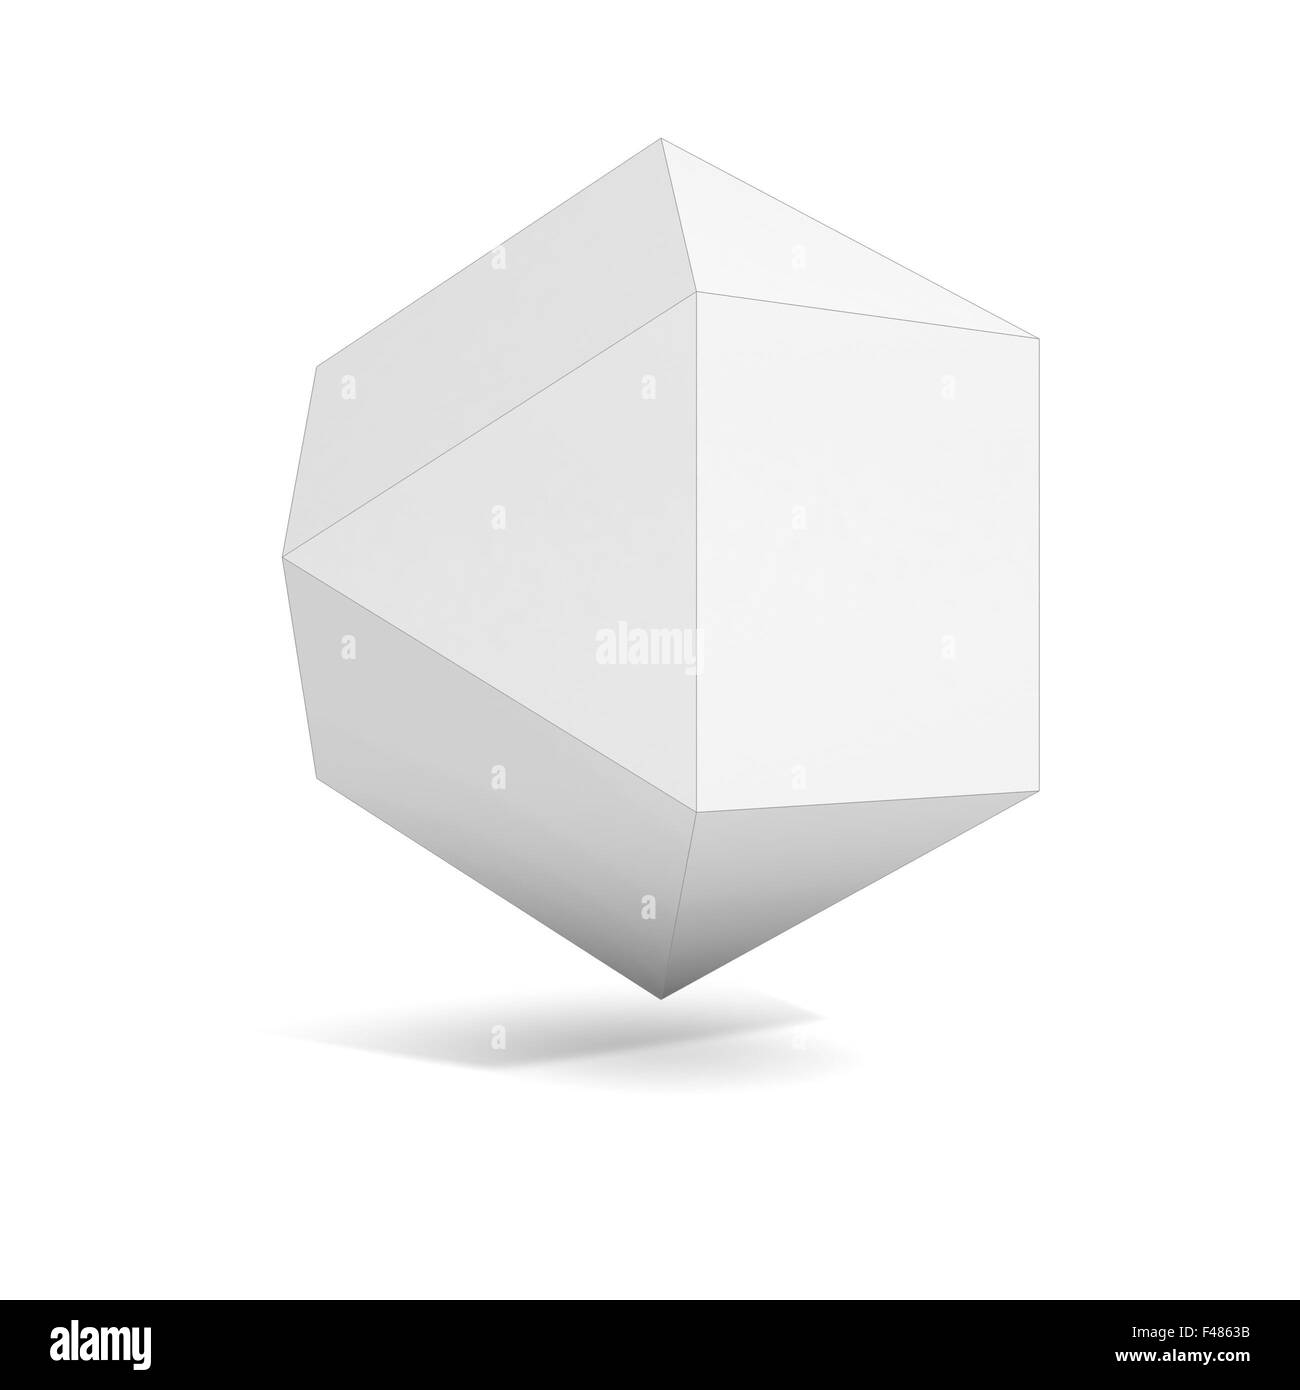 Objet 3d géométrique abstraite, plus les variations de polyèdre dans cet ensemble Banque D'Images